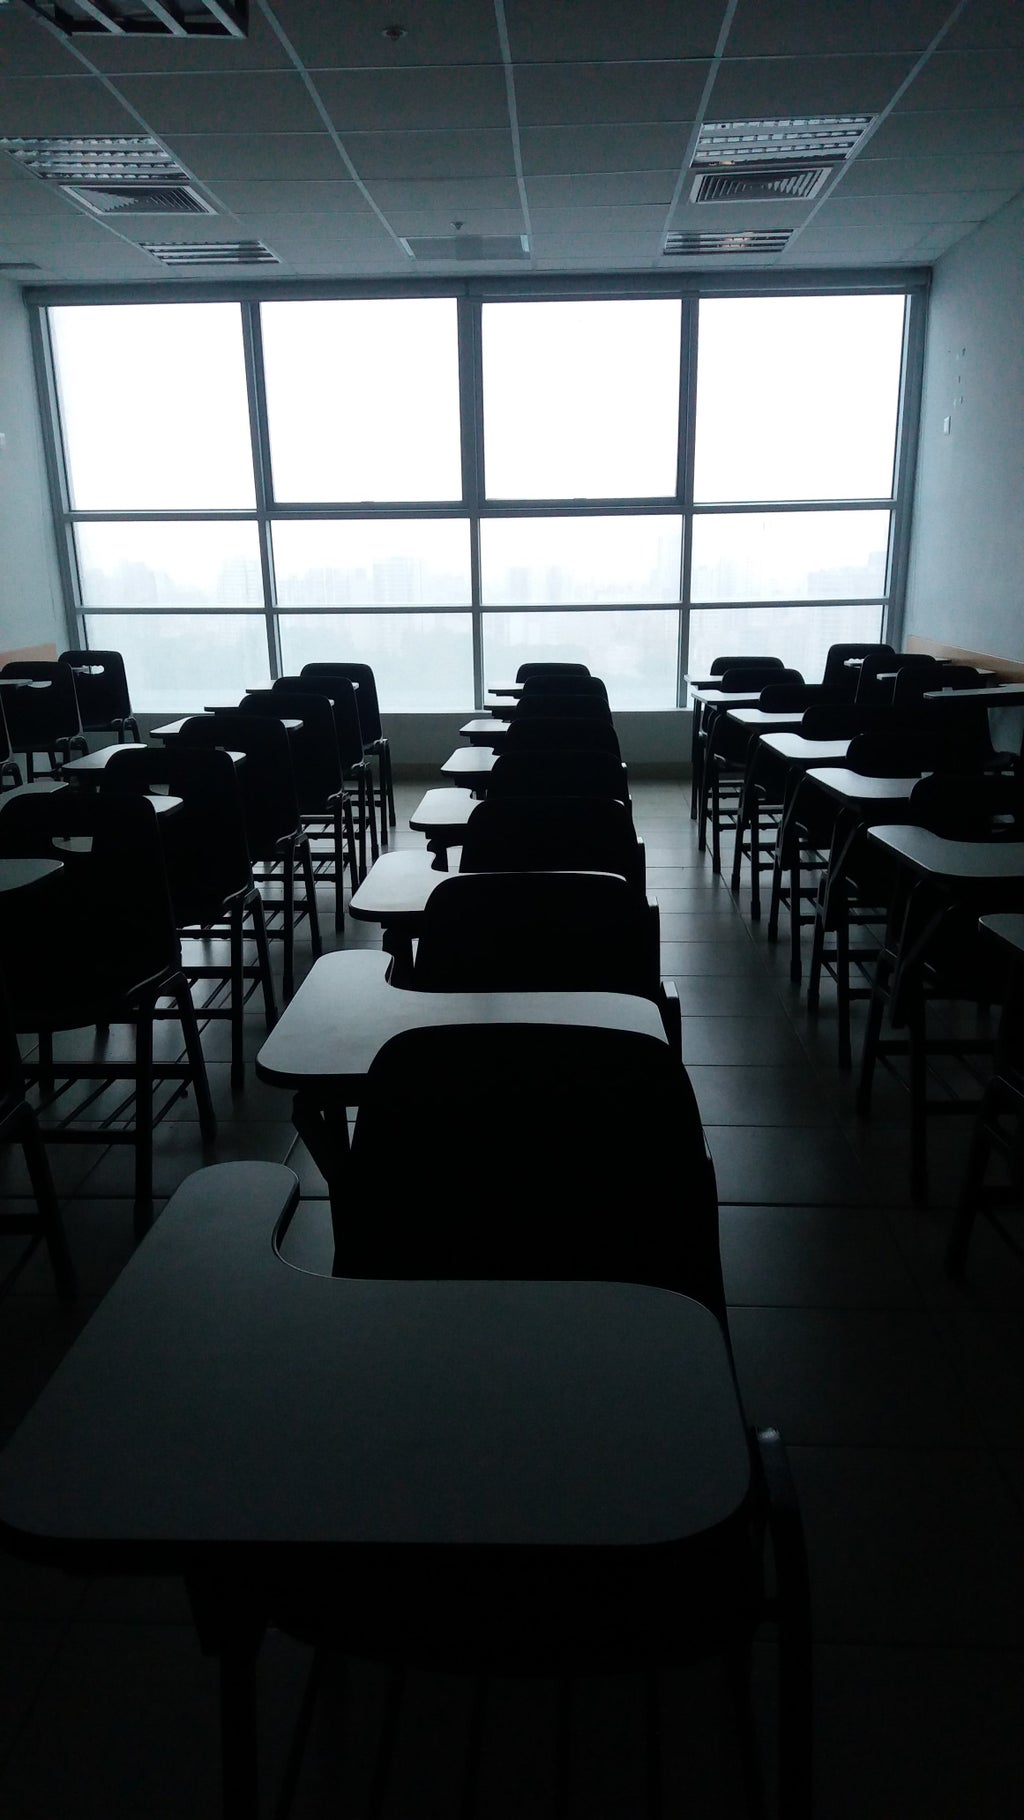 empty desks in a dark room